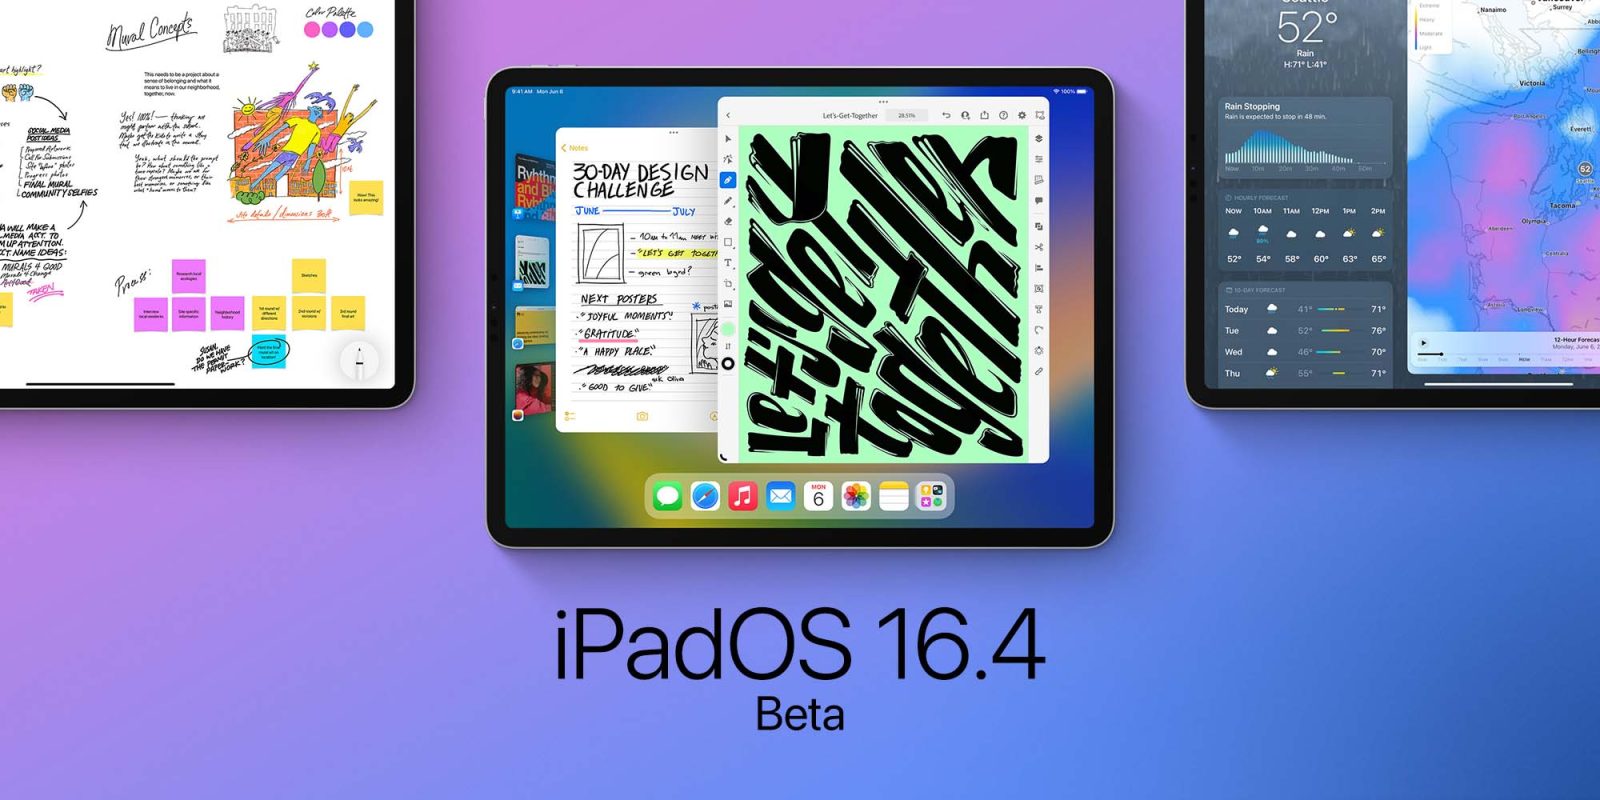 iPadOS 16.4 beta